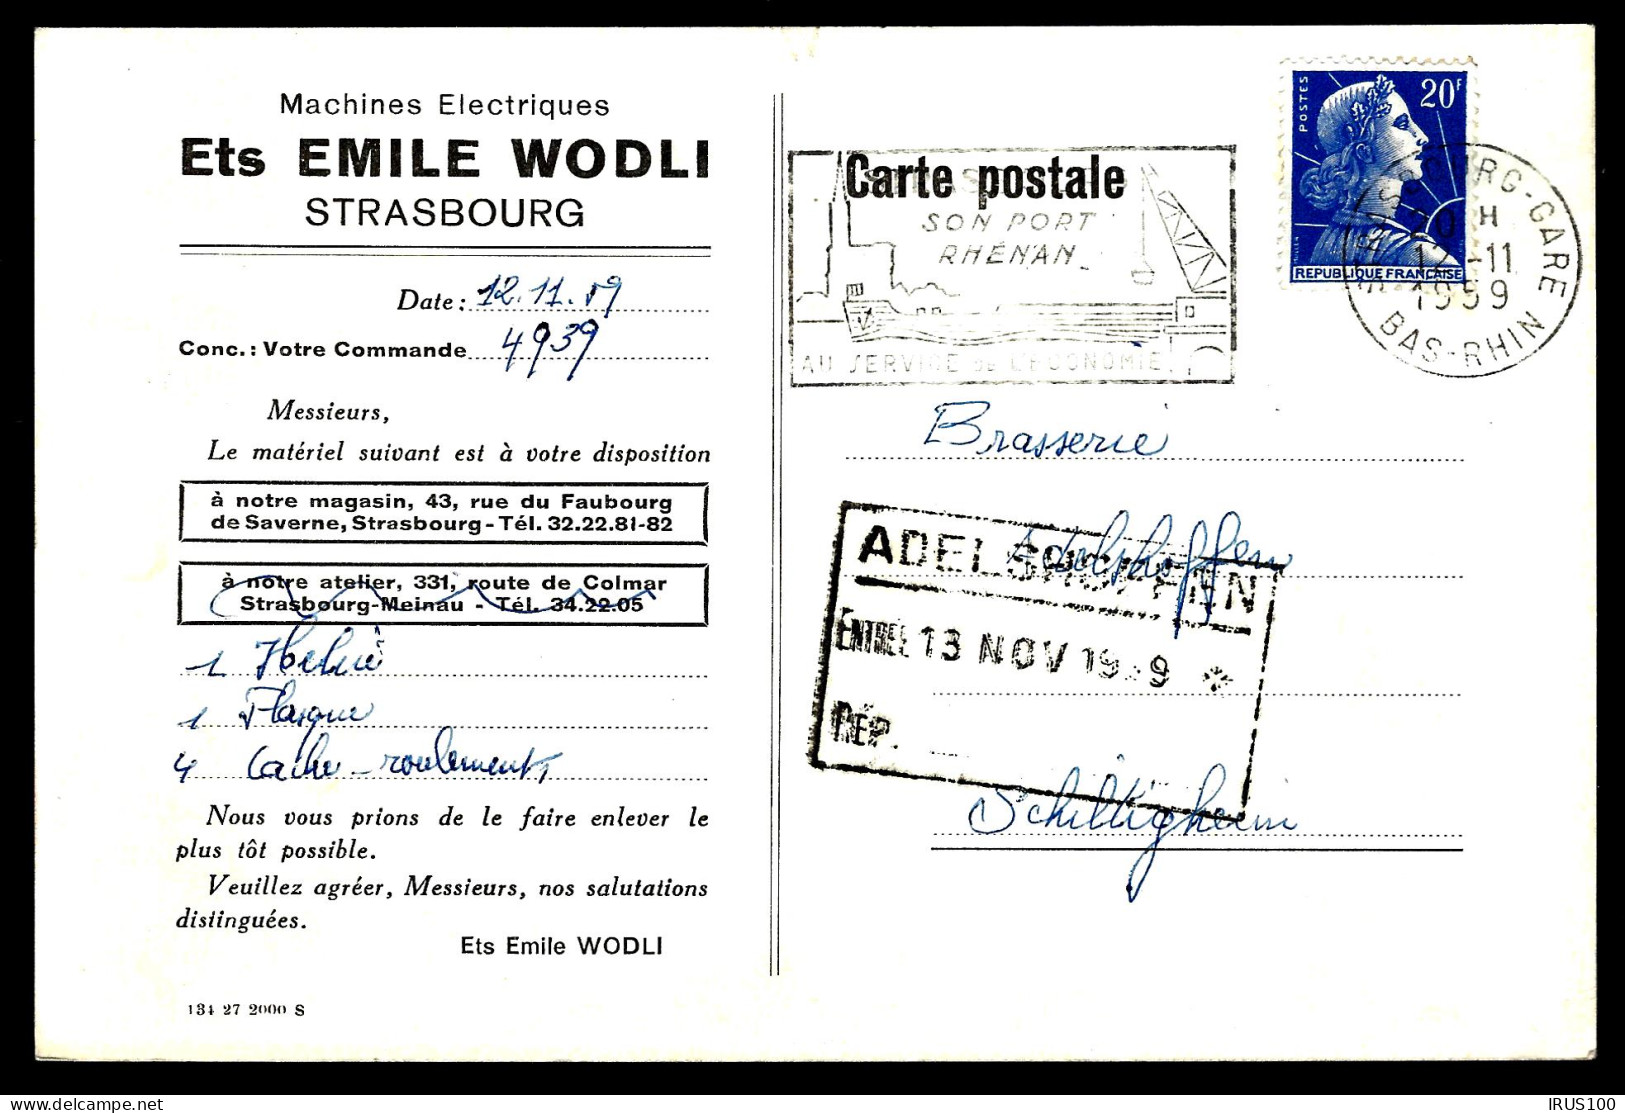 DE STRASBOURG - MACHINE ÉLECTRIQUES WODLI - 1959 -  - Usines & Industries